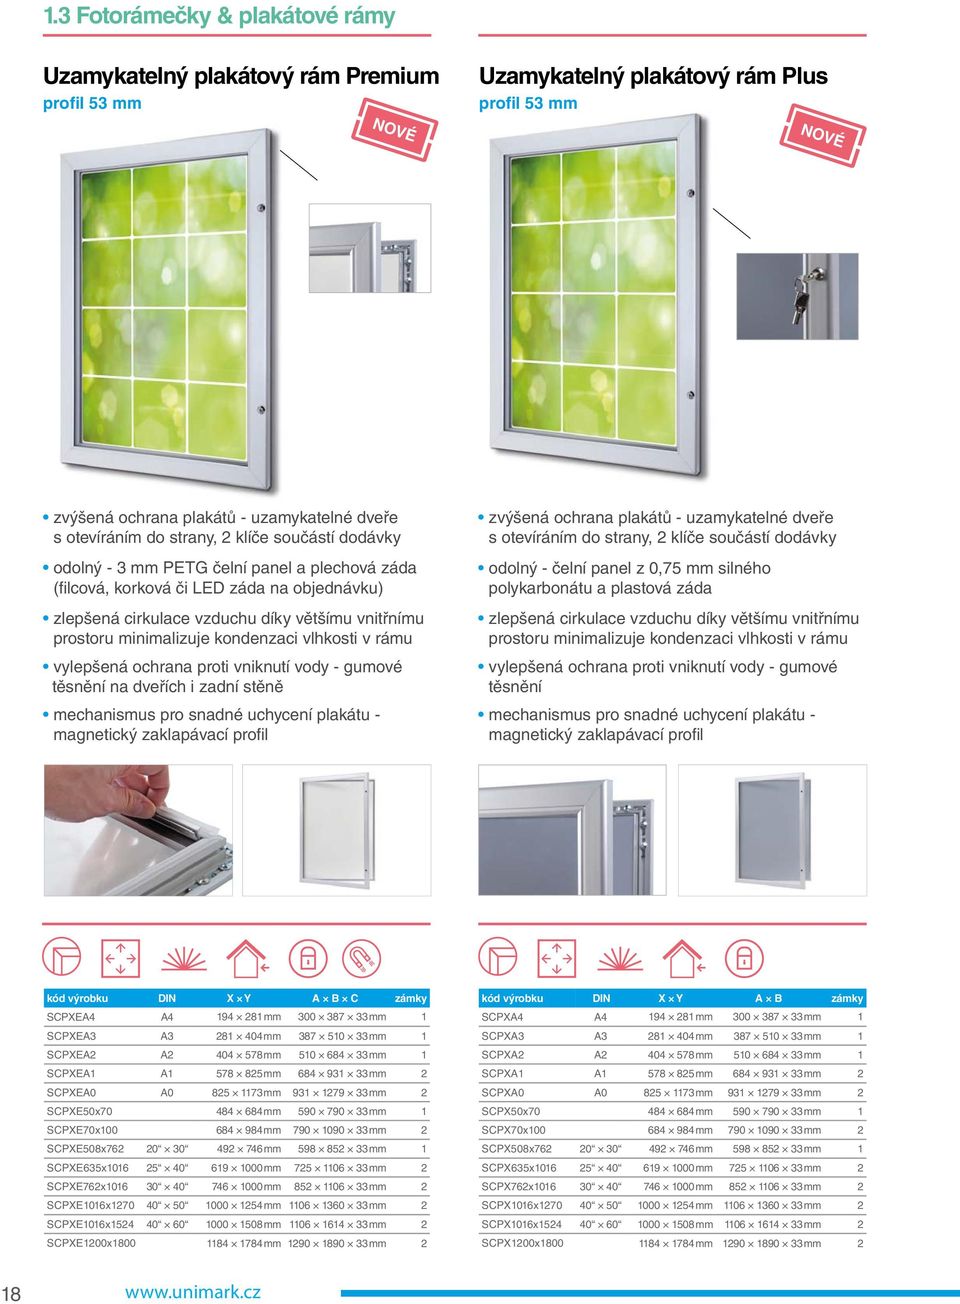 kondenzaci vlhkosti v rámu vylepšená ochrana proti vniknutí vody - gumové těsnění na dveřích i zadní stěně mechanismus pro snadné uchycení plakátu - magnetický zaklapávací profil zvýšená ochrana